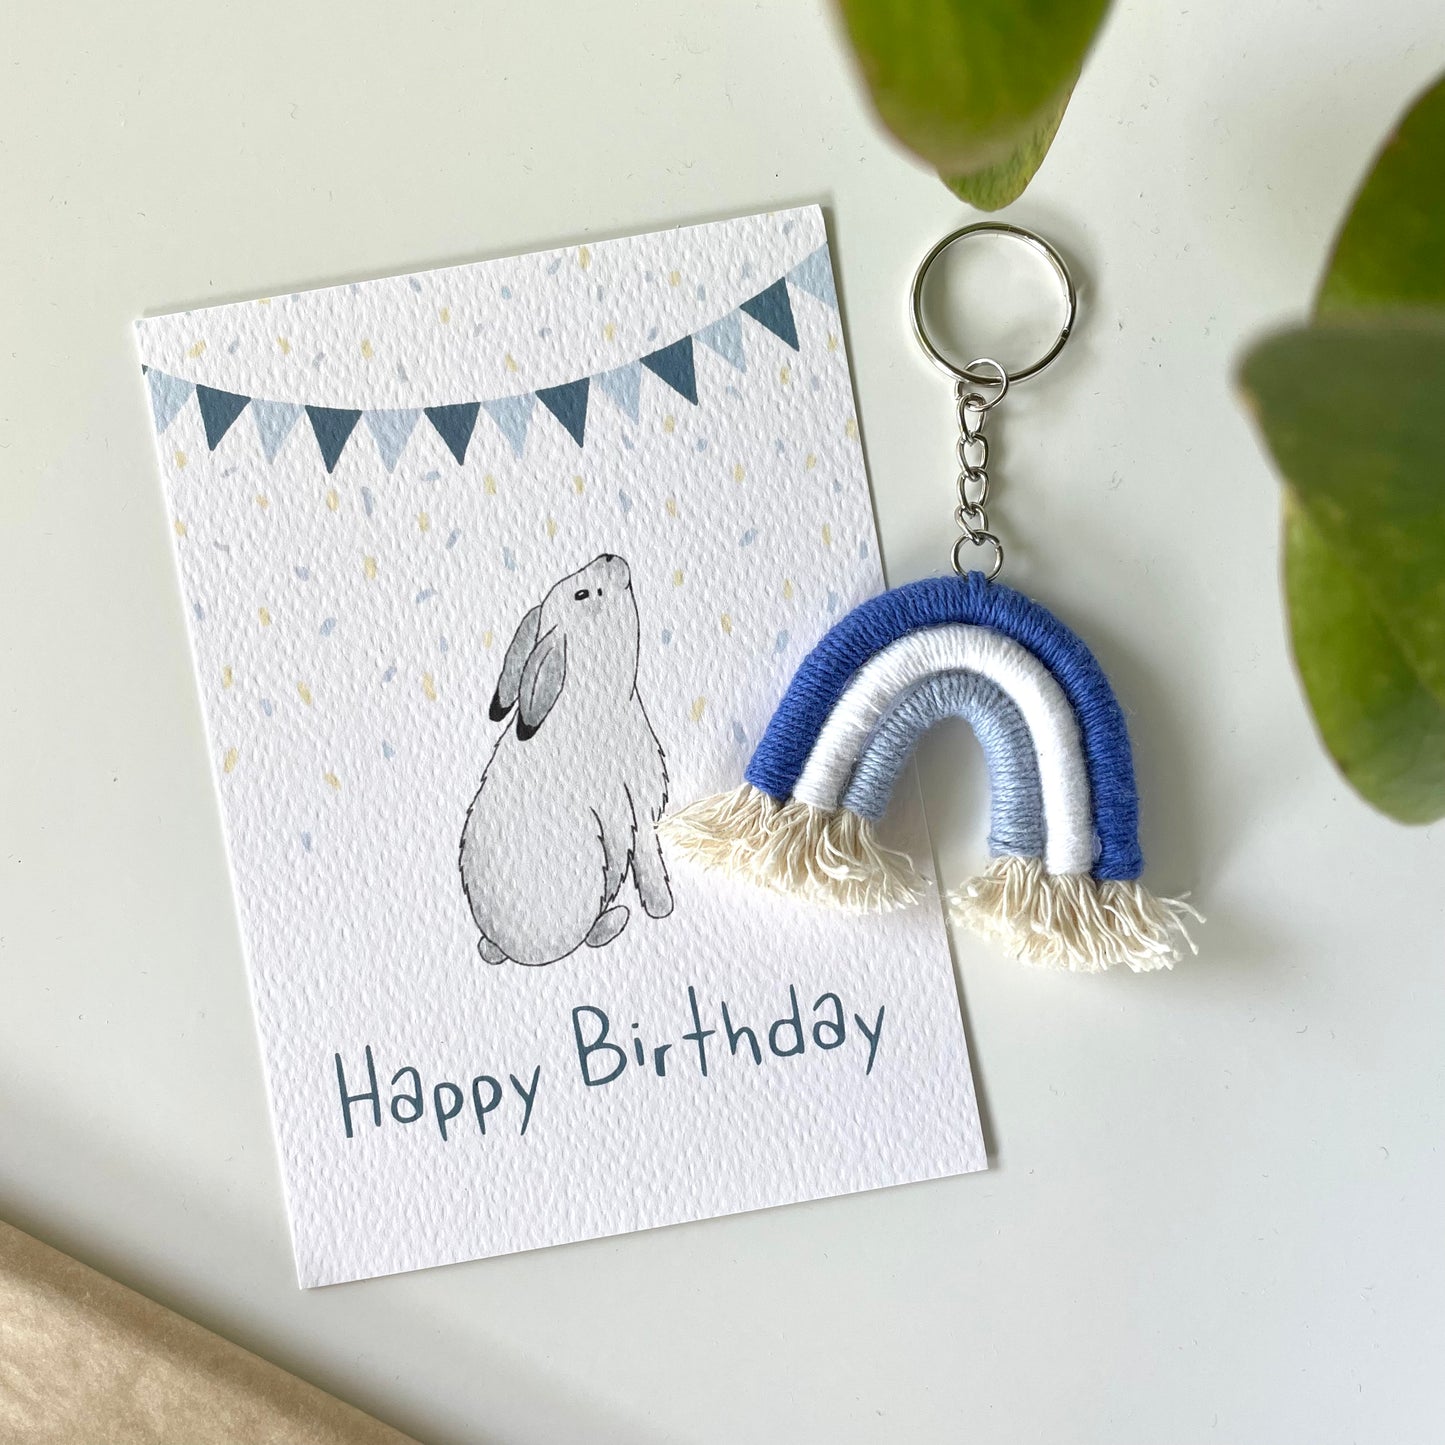 Happy Birthday Bunny postcard